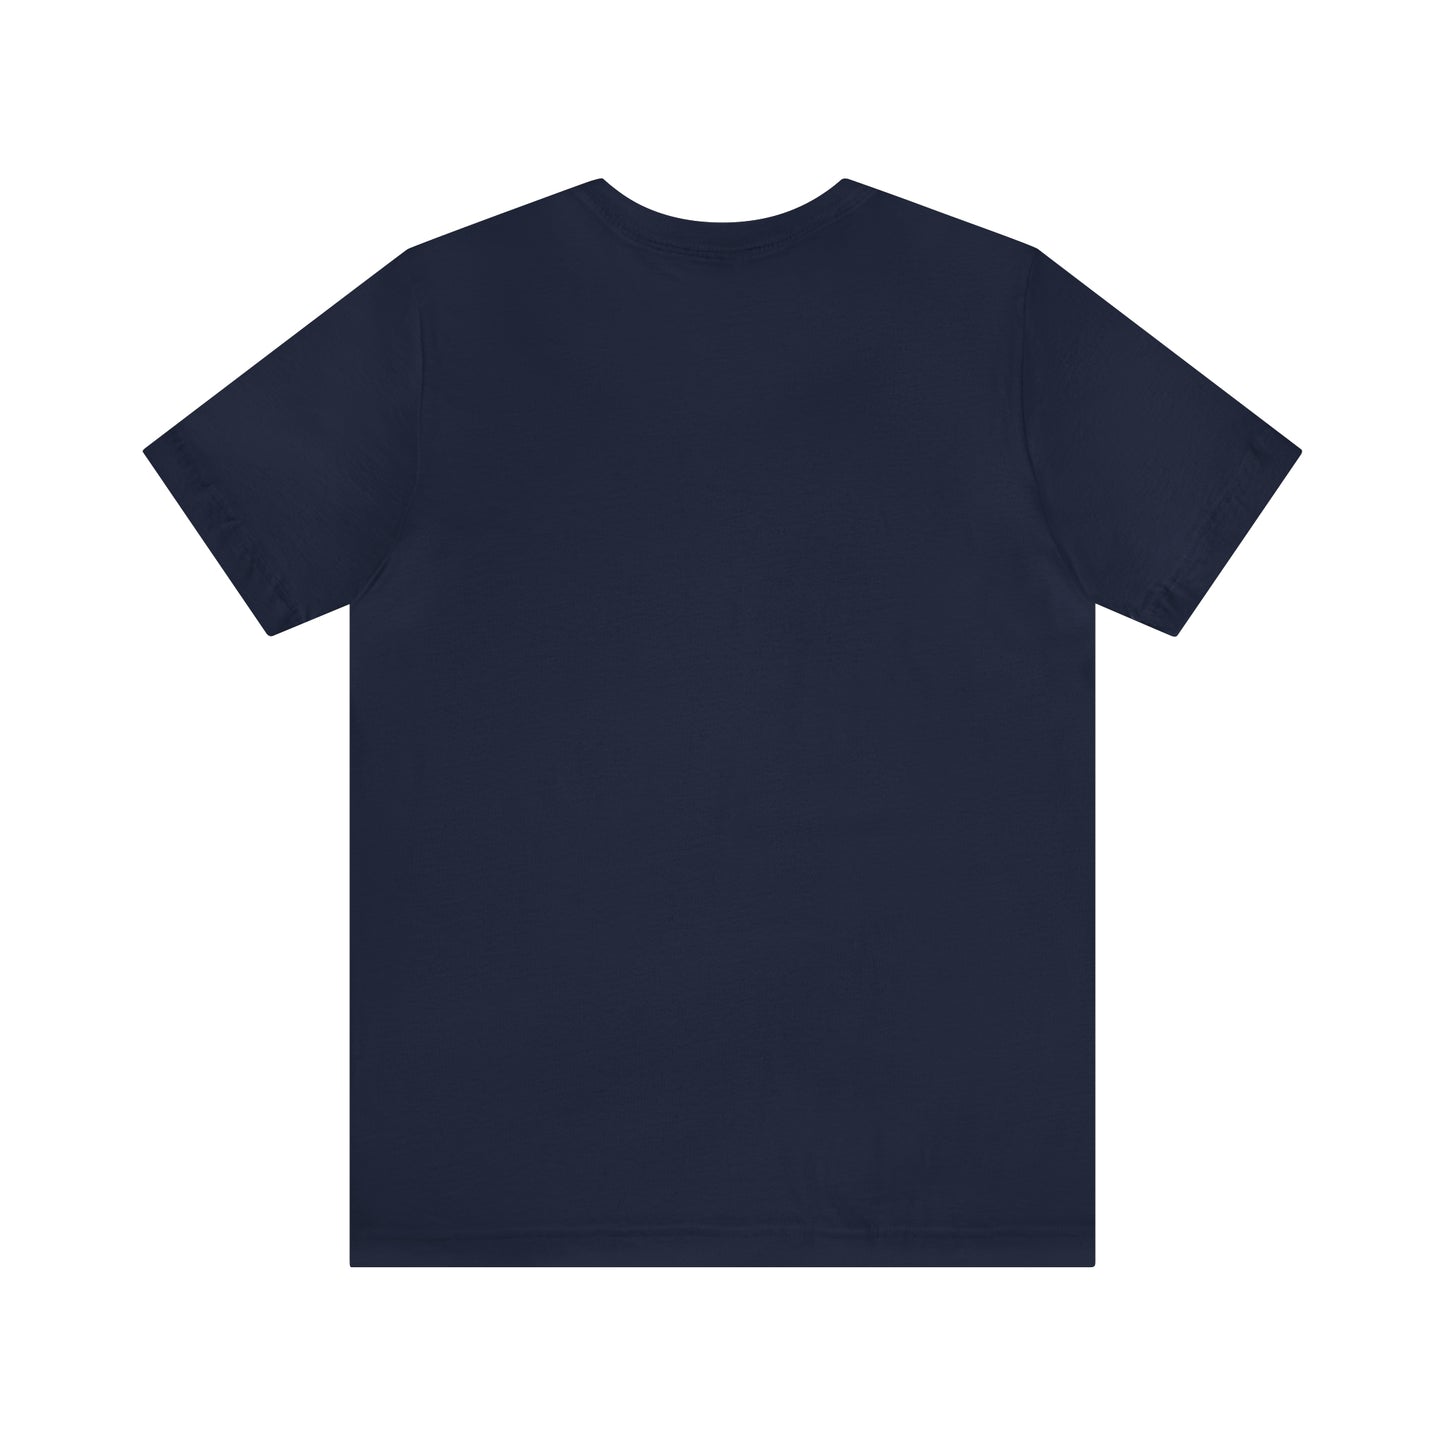 Cute Teacher Shirt, Second Grade Energy Shirt, Shirt for Second Grade, Teacher Appreciation Shirt, Best Teacher Shirt, T497